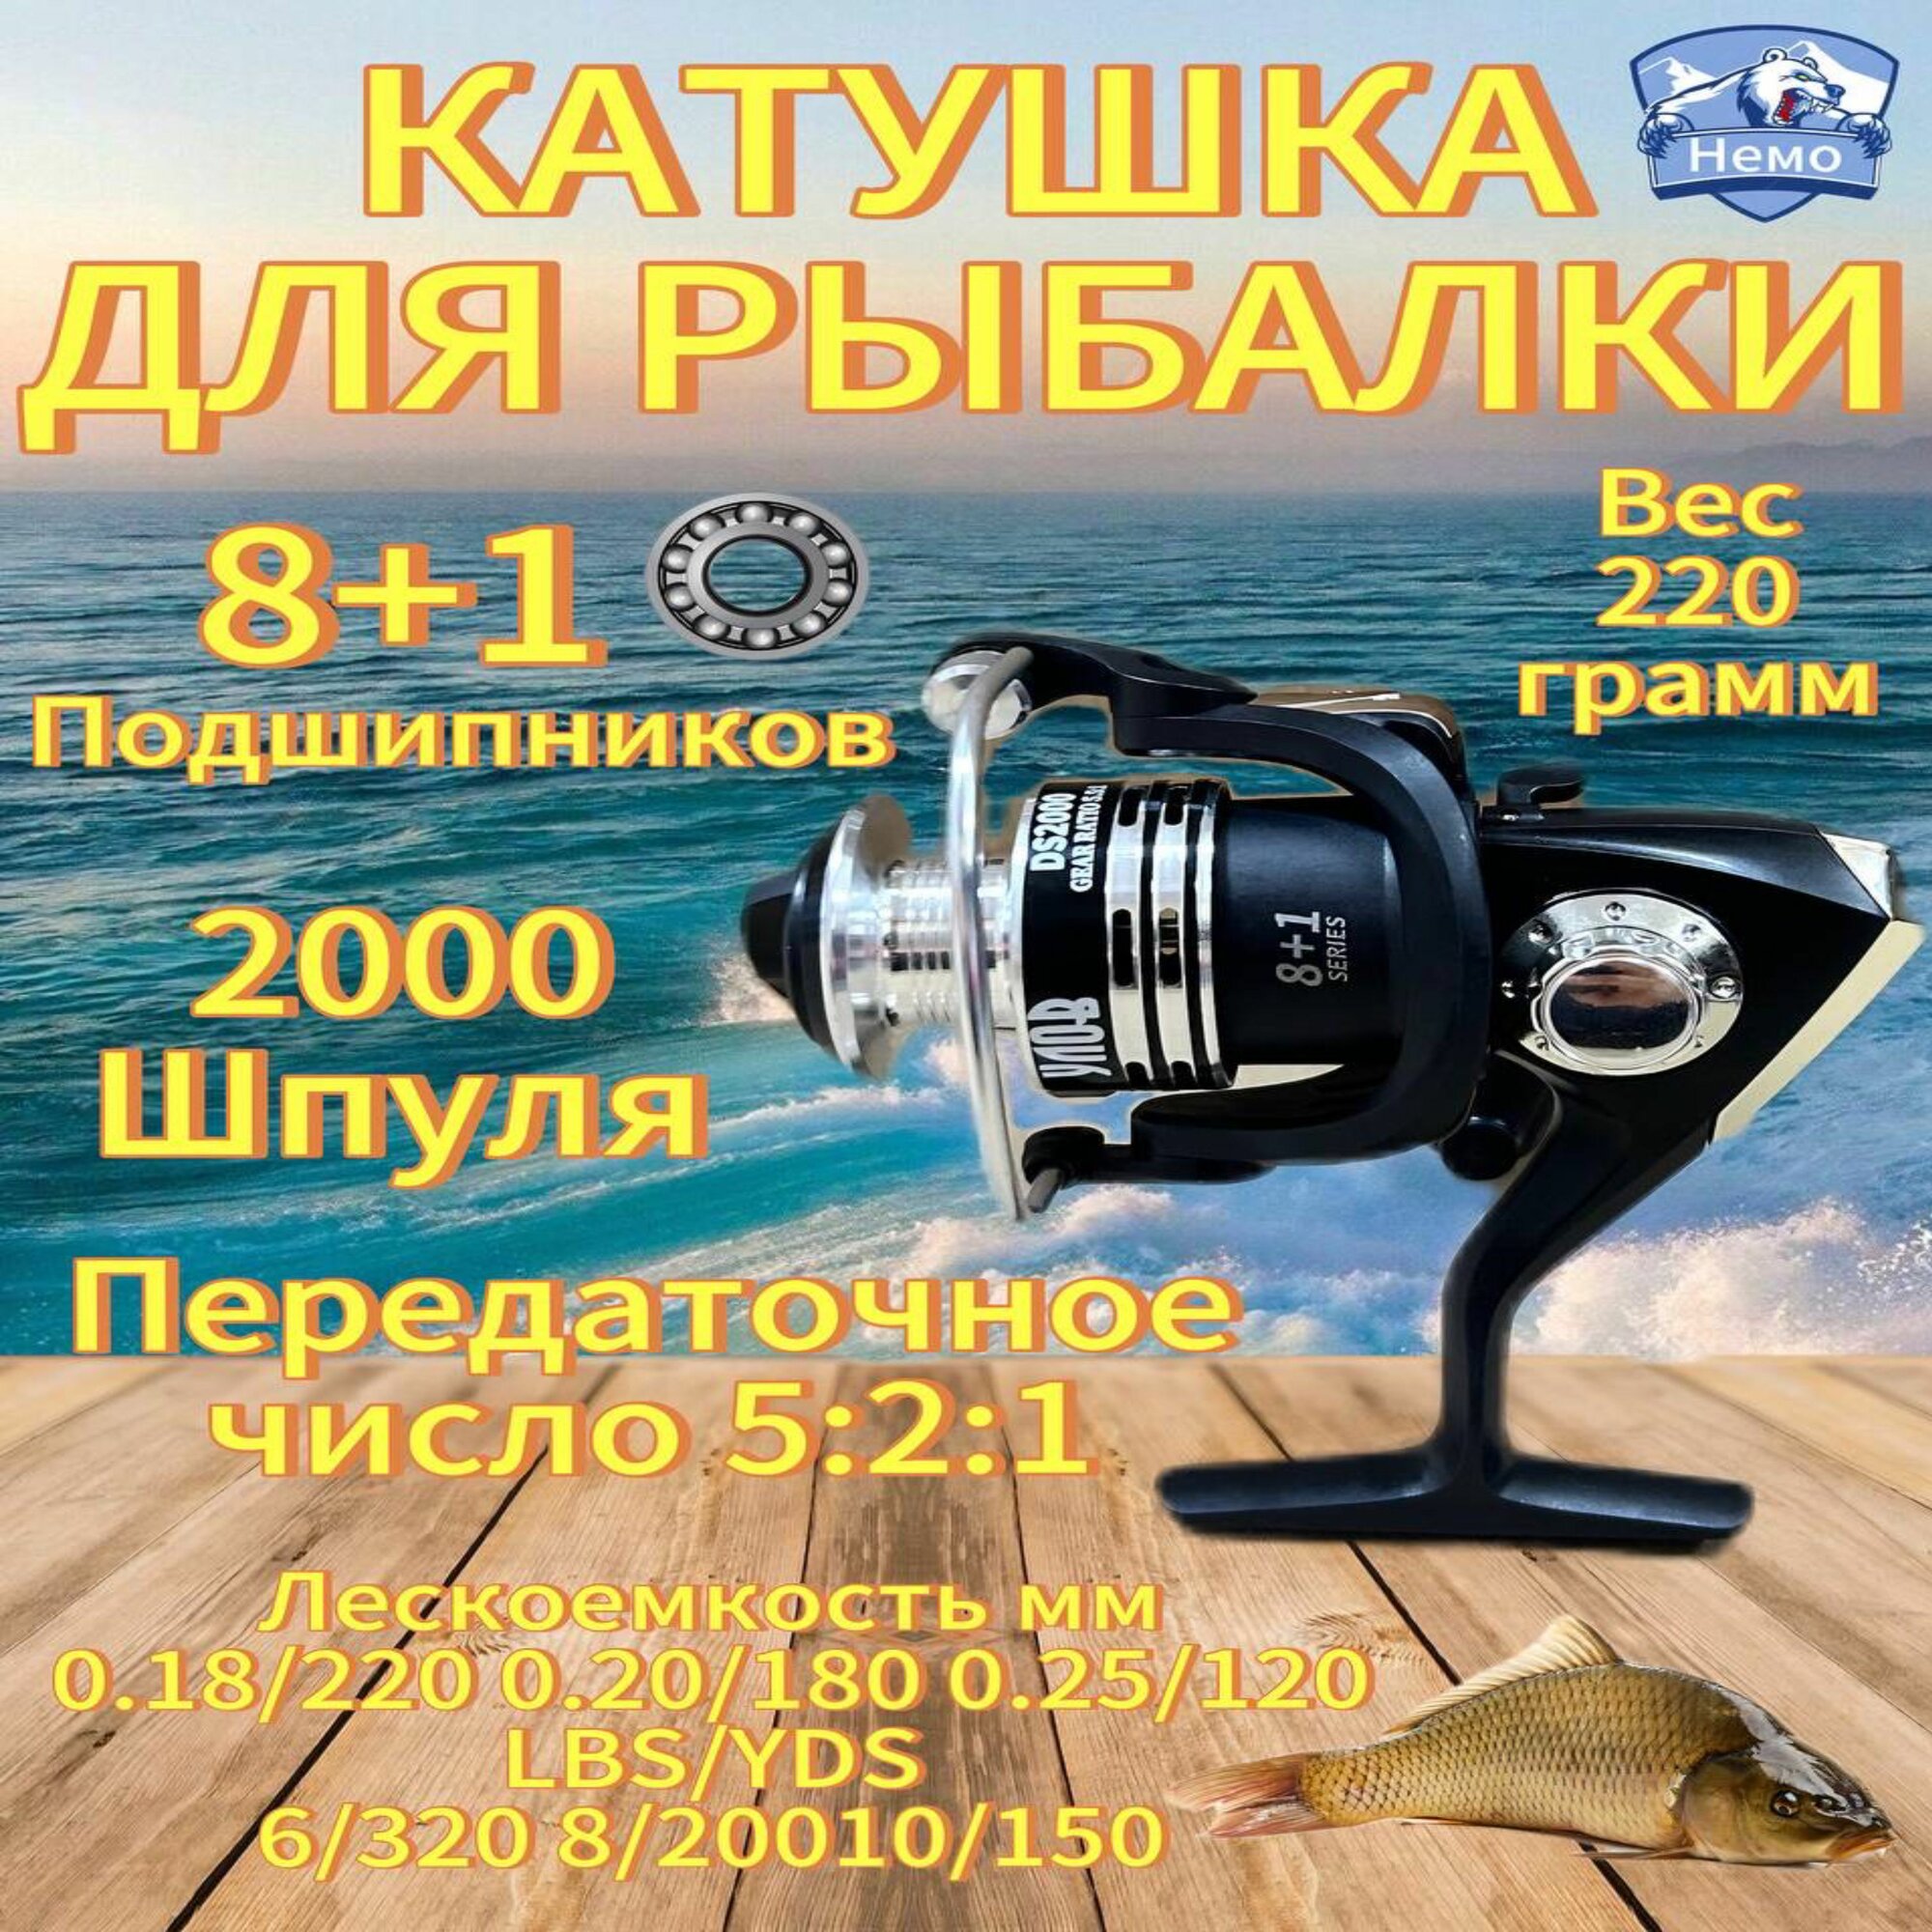 Катушка для спиннинга 2000 / катушка для рыбалки безынерционная, для фидера, 12 подшипников